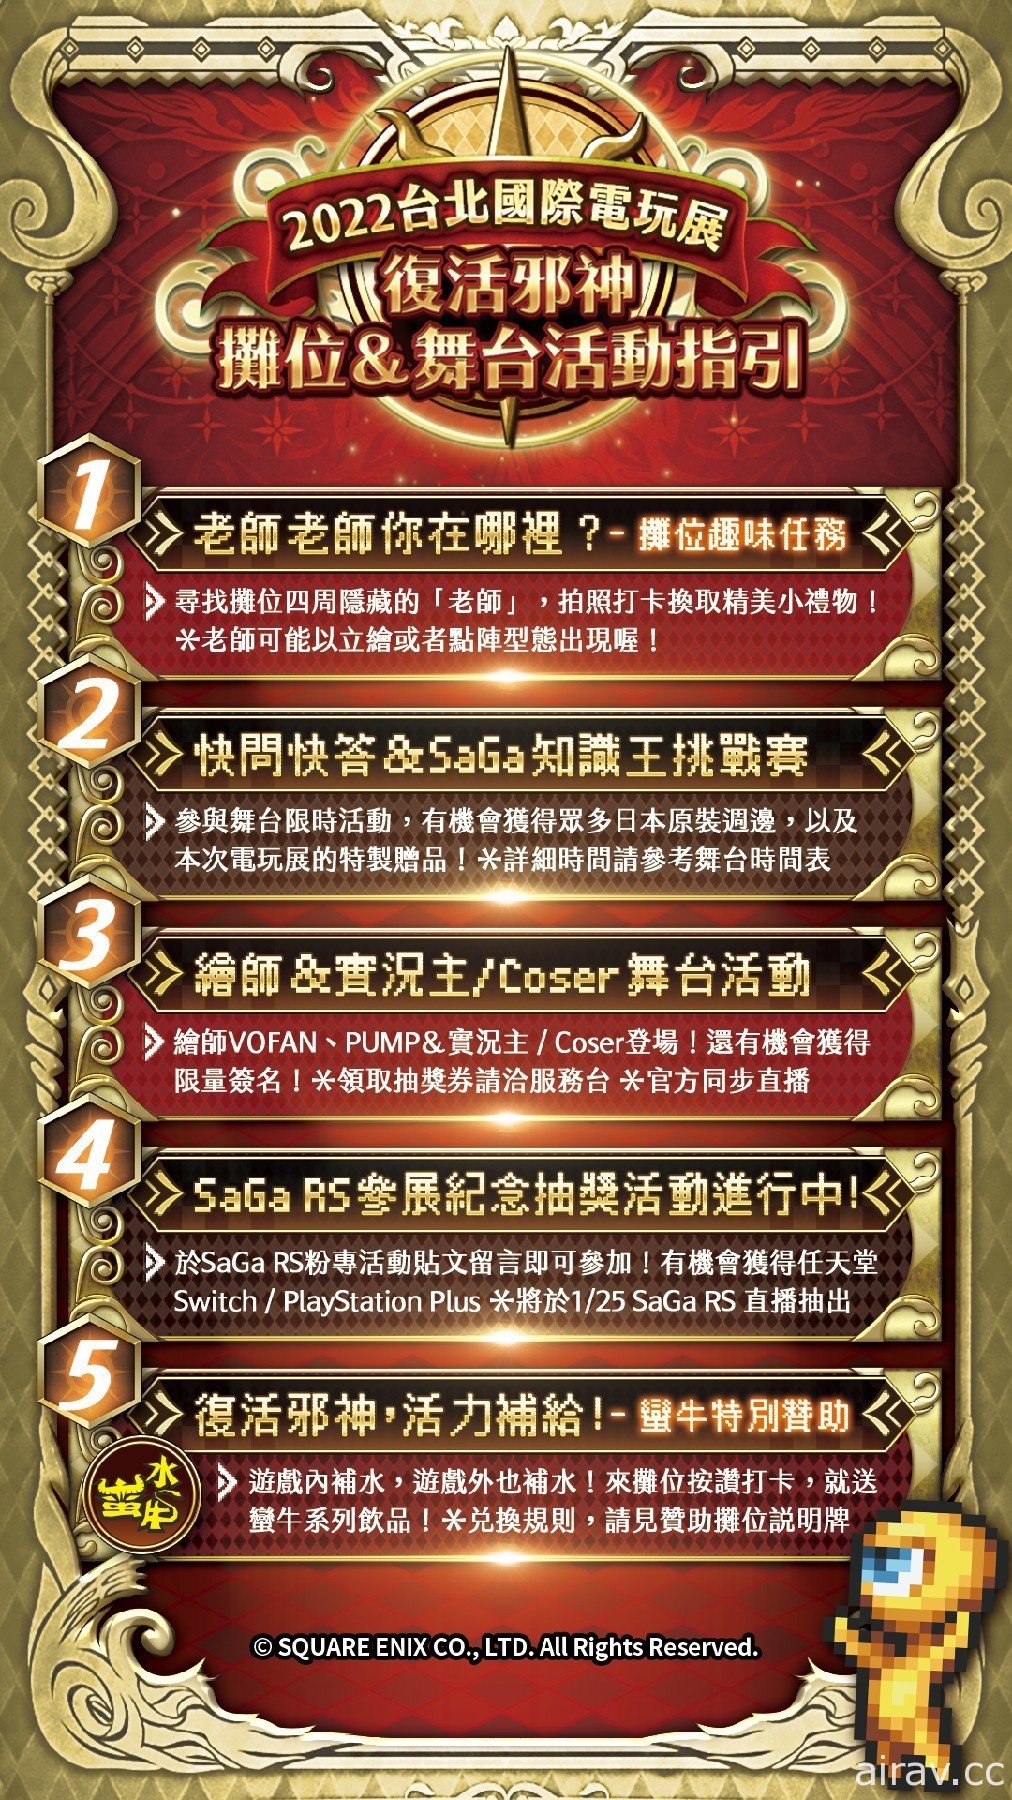 【TpGS 22】《复活邪神》系列首次参展“台北国际电玩展” 释出摊位资讯